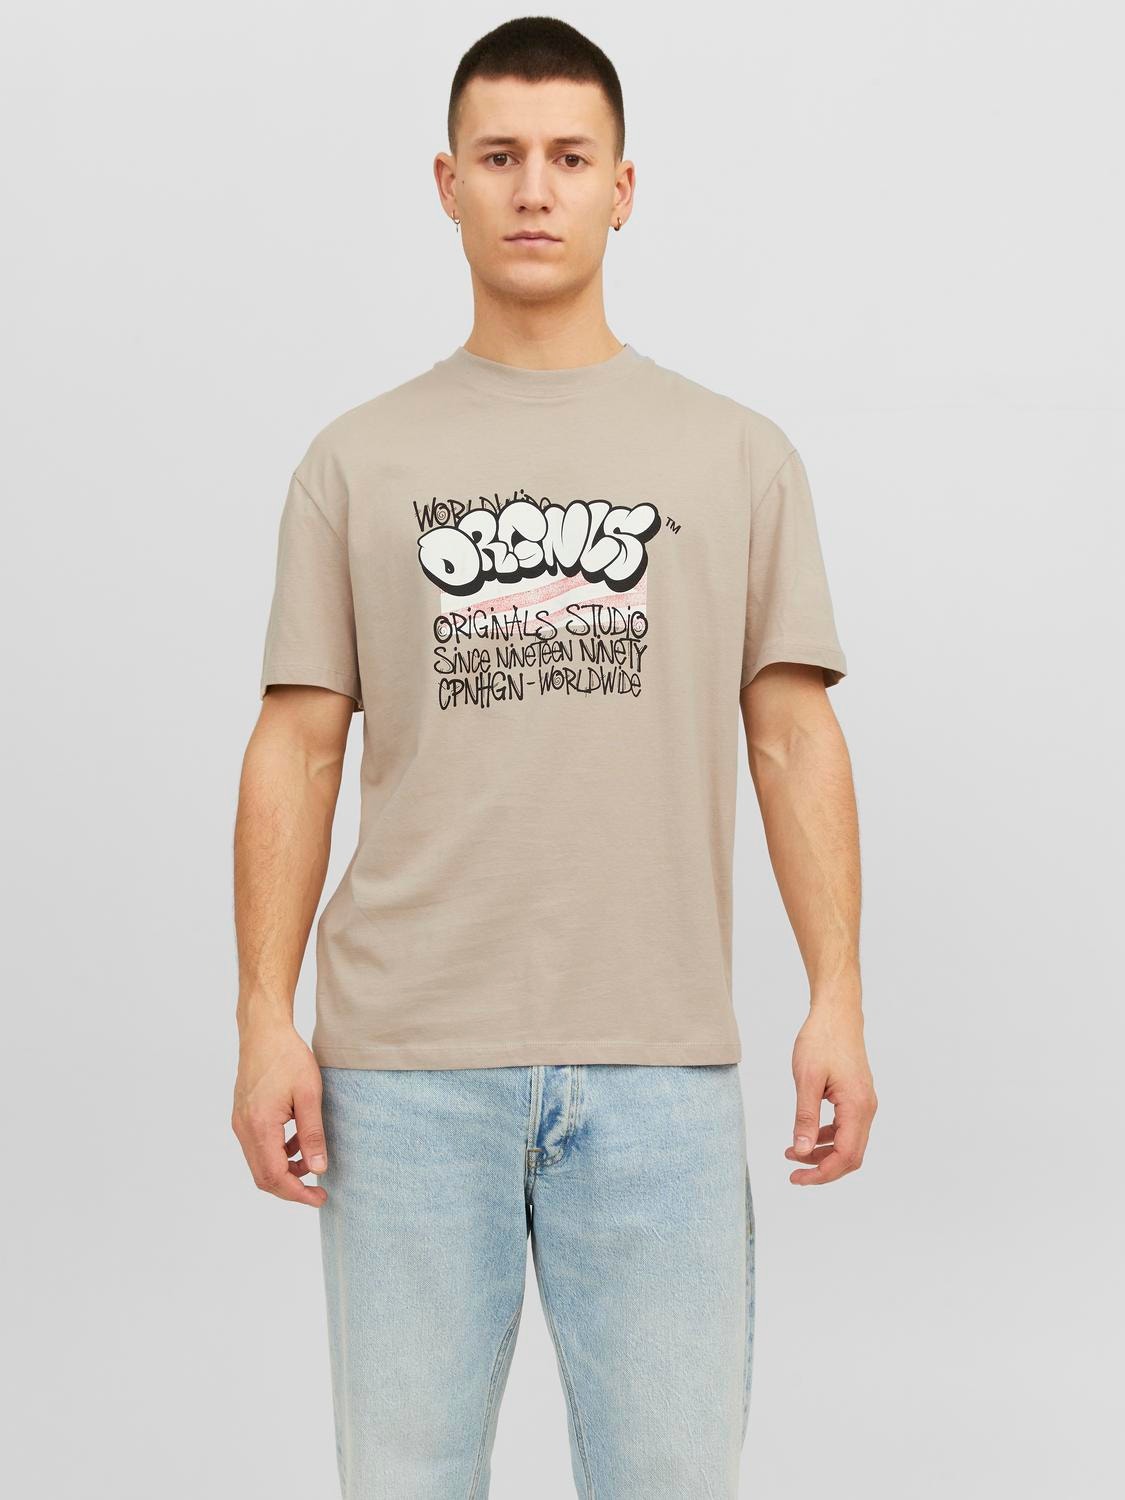 Jack & Jones T-shirt Imprimé Col rond -Atmosphere - 12243613